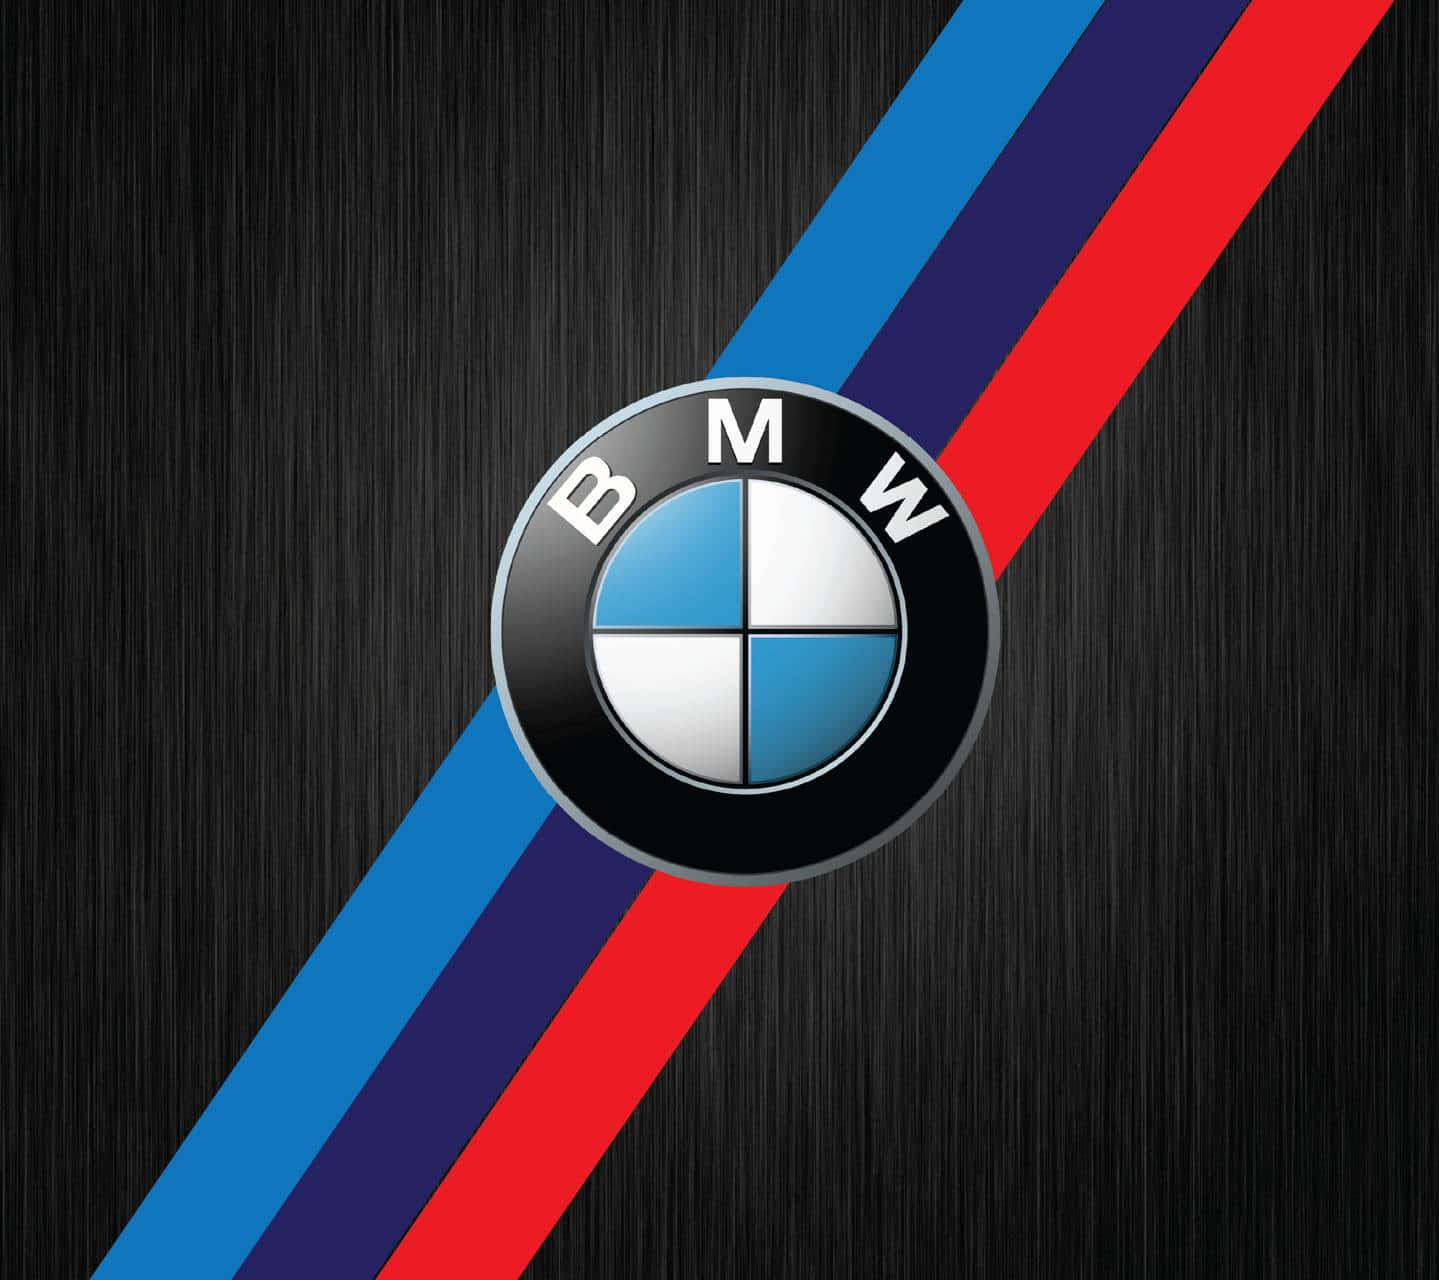 Sfondodella Serie M Bmw Con Logo E Strisce A 720p.